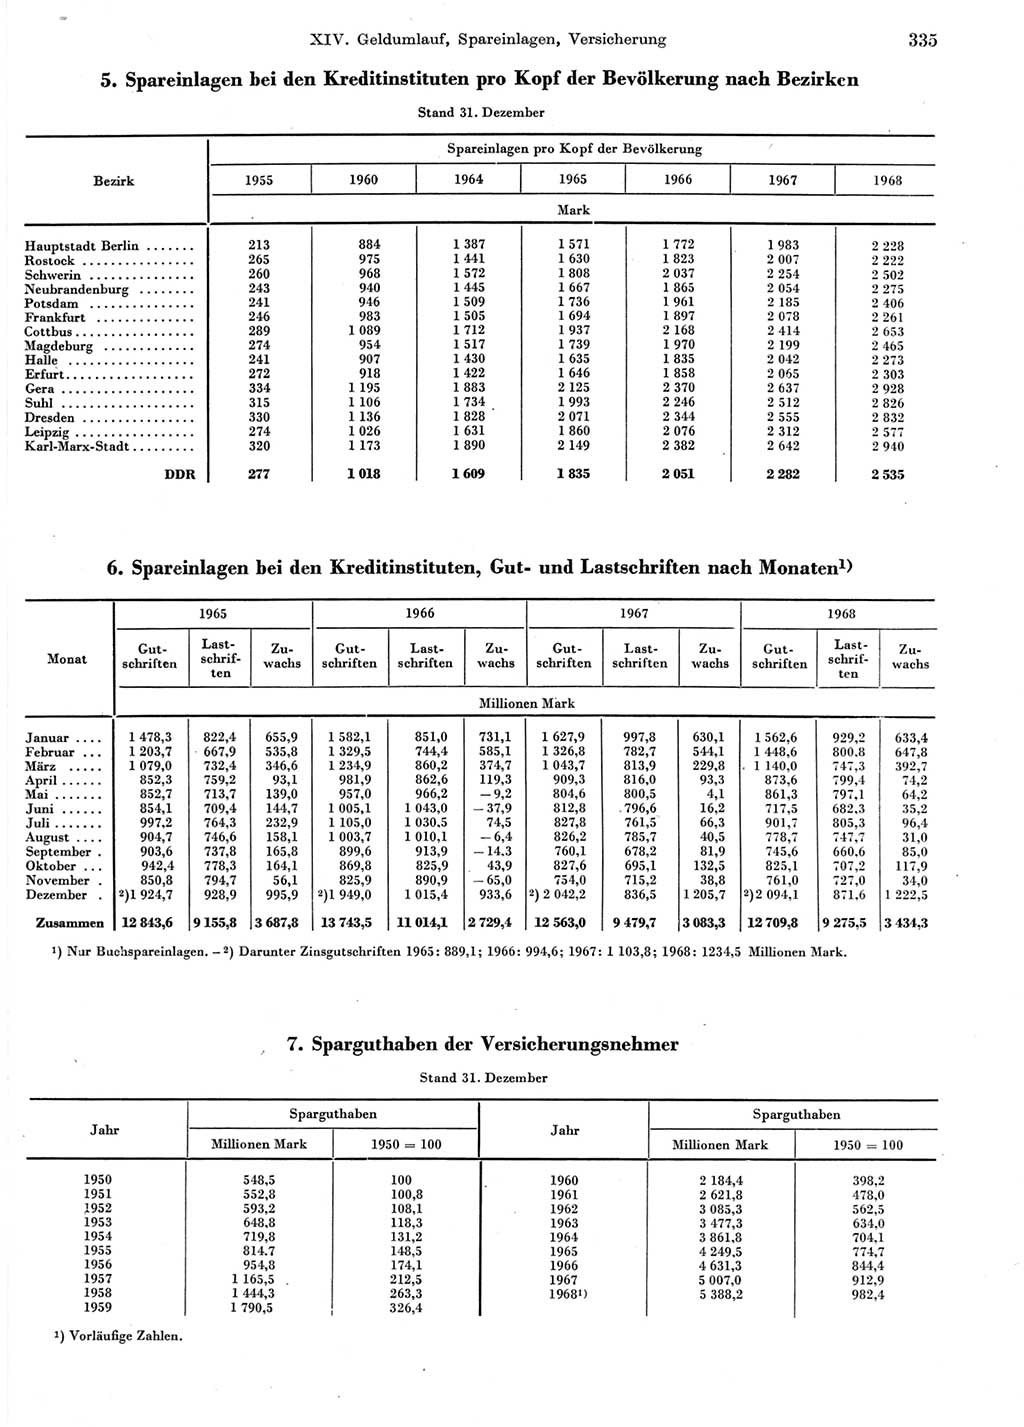 Statistisches Jahrbuch der Deutschen Demokratischen Republik (DDR) 1969, Seite 335 (Stat. Jb. DDR 1969, S. 335)